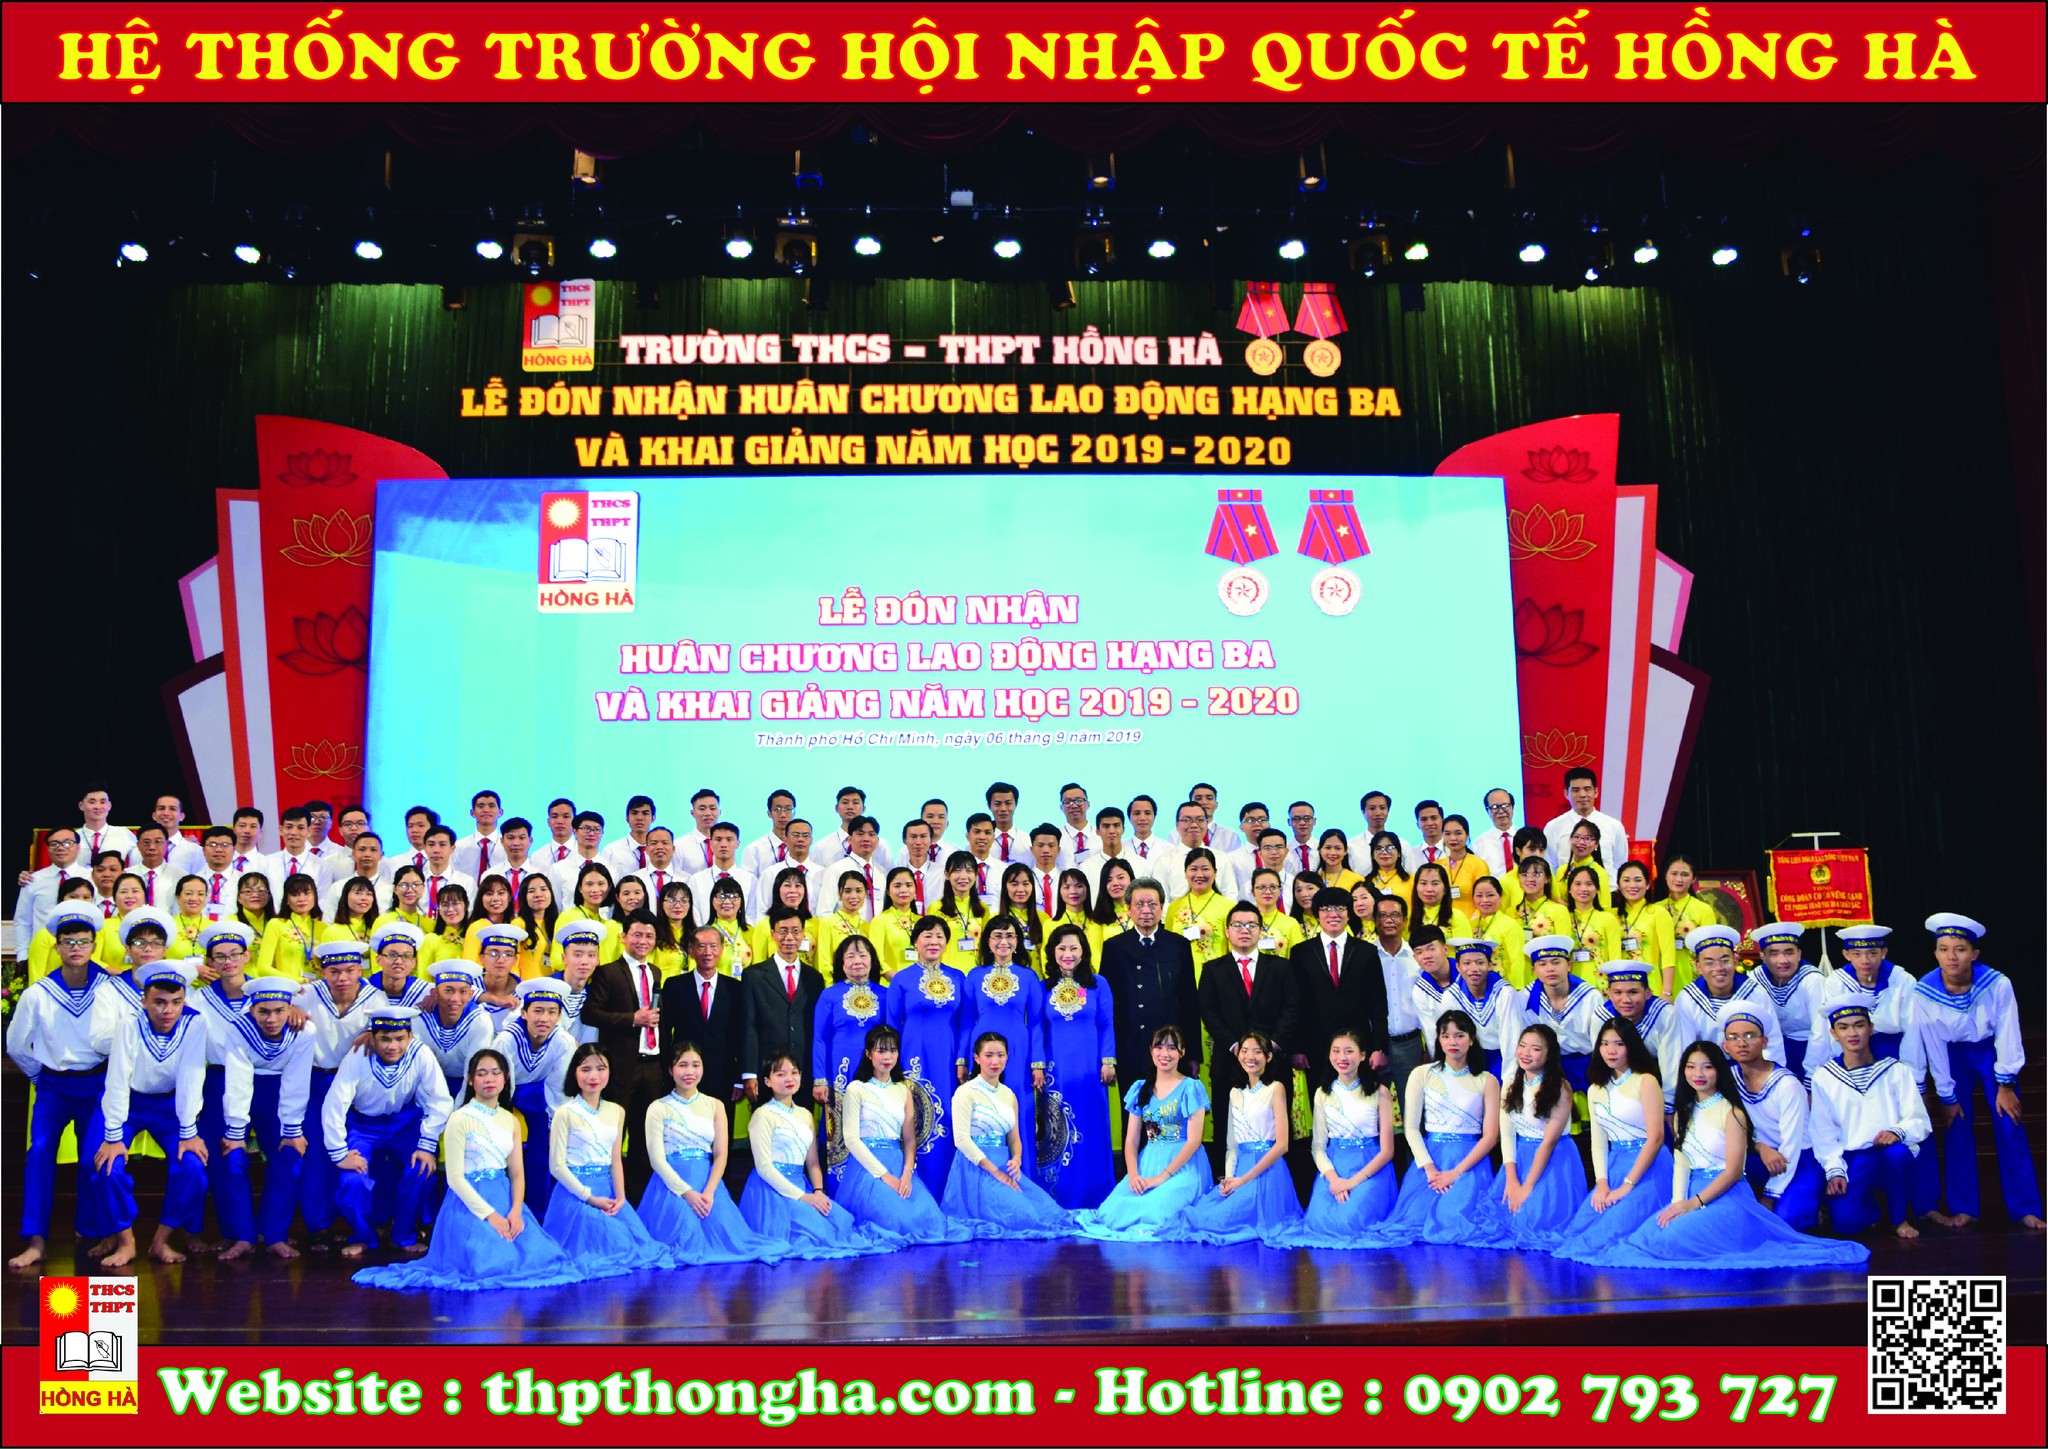 Trường THCS - THPT Hồng Hà ảnh 1